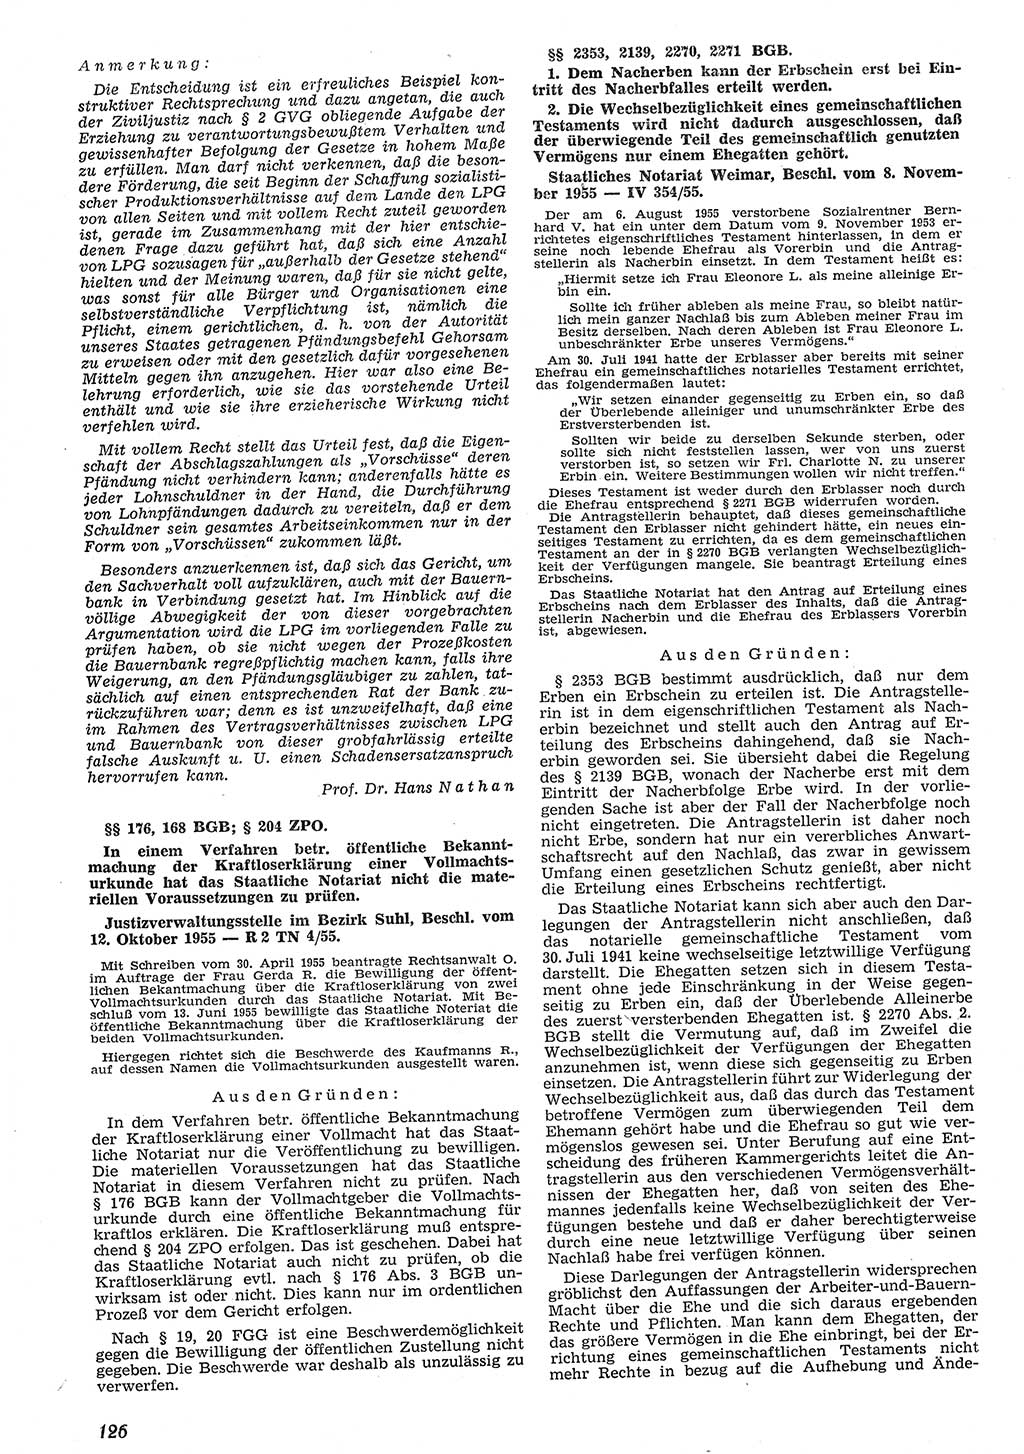 Neue Justiz (NJ), Zeitschrift für Recht und Rechtswissenschaft [Deutsche Demokratische Republik (DDR)], 10. Jahrgang 1956, Seite 126 (NJ DDR 1956, S. 126)